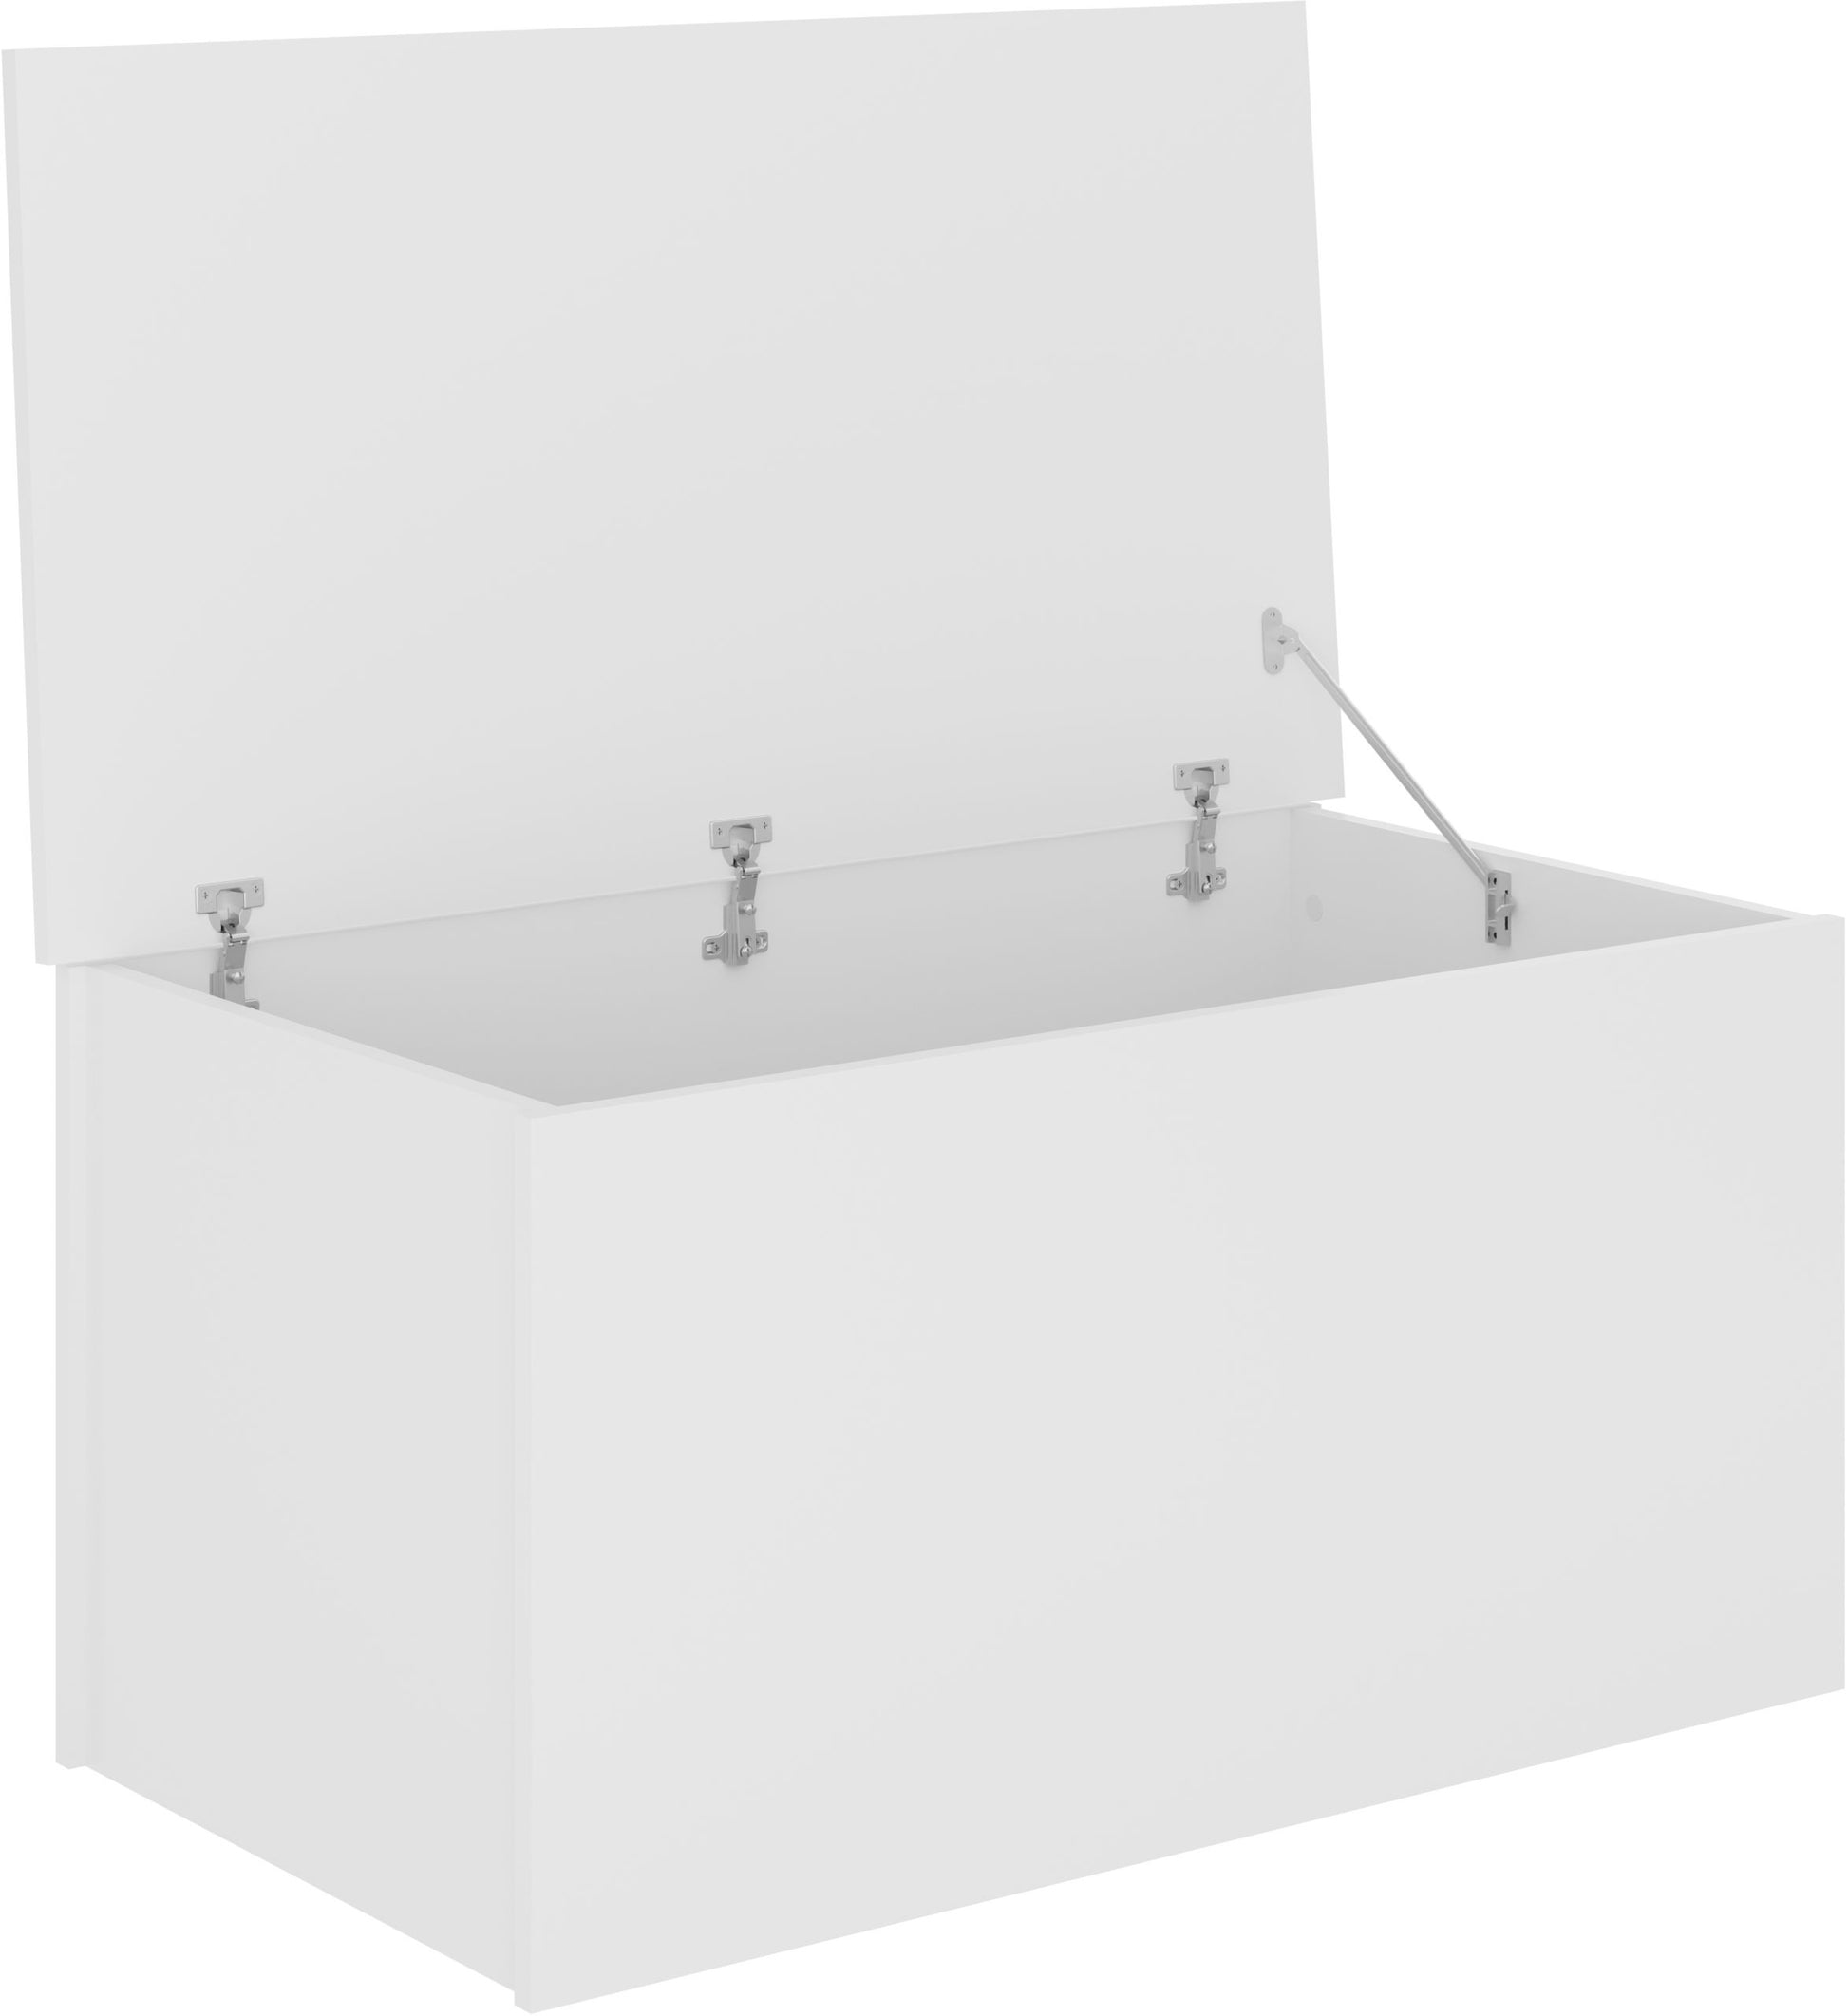 NEVADA-BLANKET-BOX-WHITE-GLOSS-2021-100-104-013-5-scaled.jpg